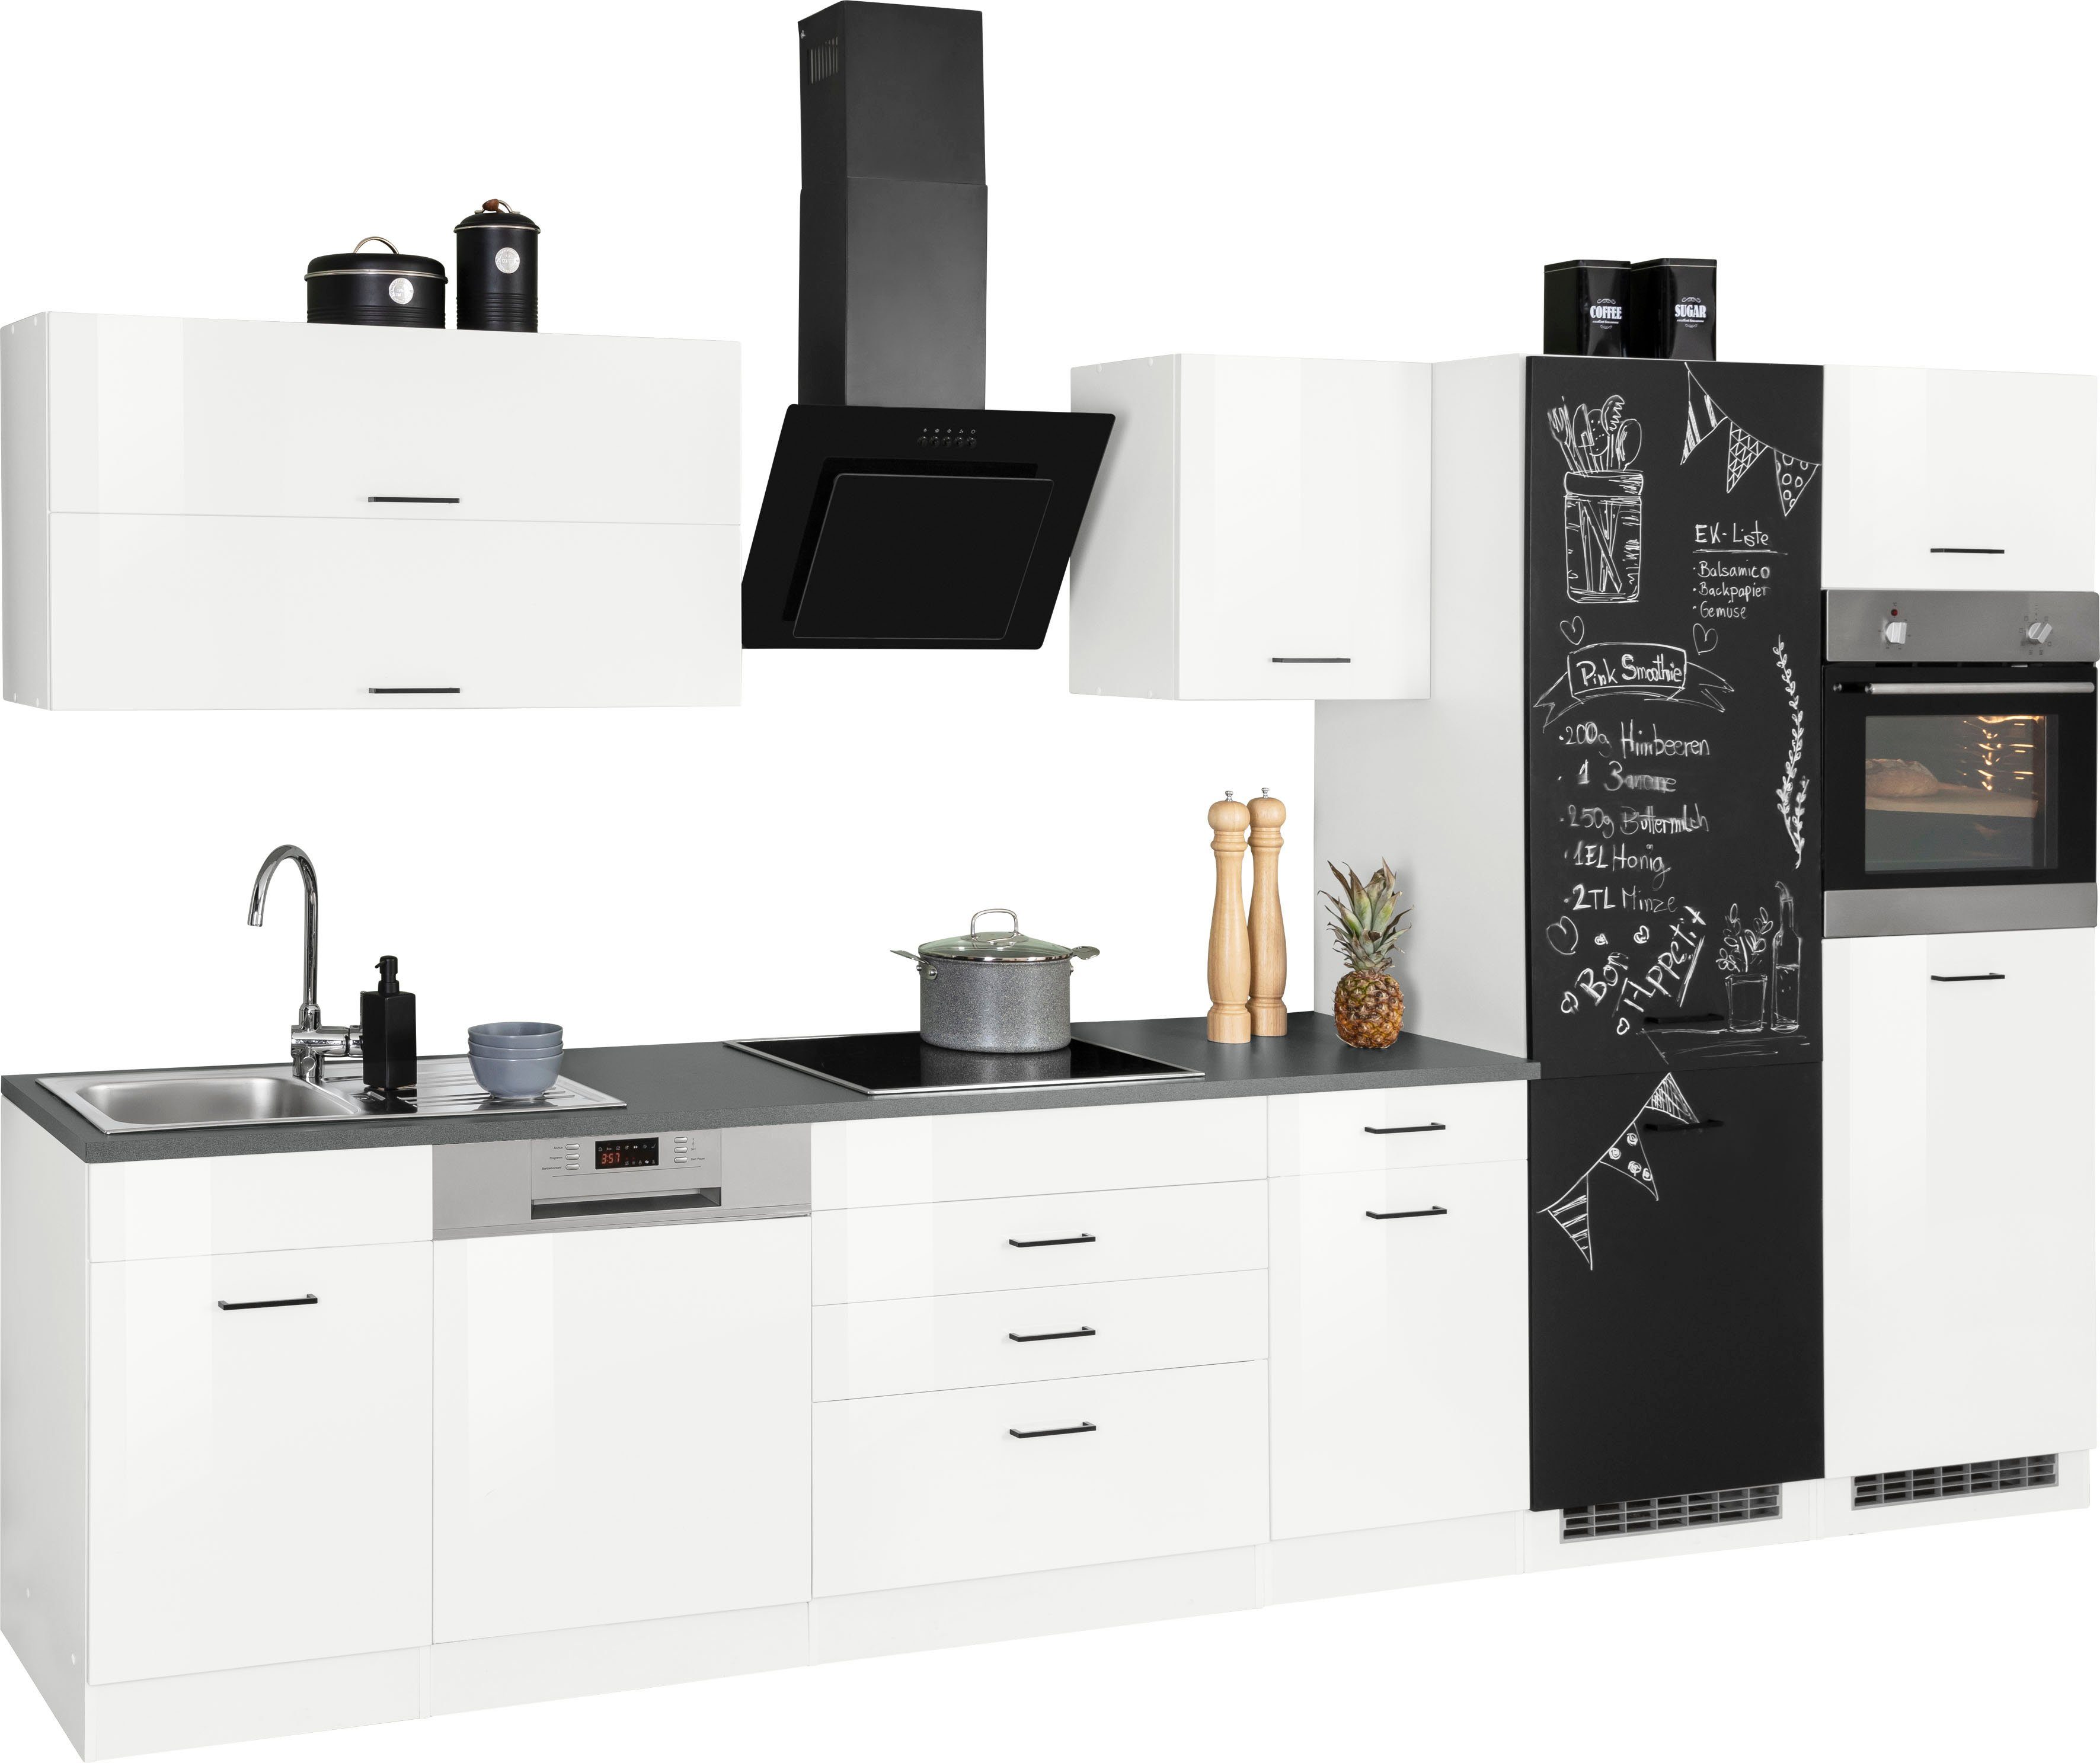 HELD MÖBEL Küchenzeile Trier, mit 360 cm, Breite MDF-Fronten E-Geräten, Mit verarbeiteten hochwertig